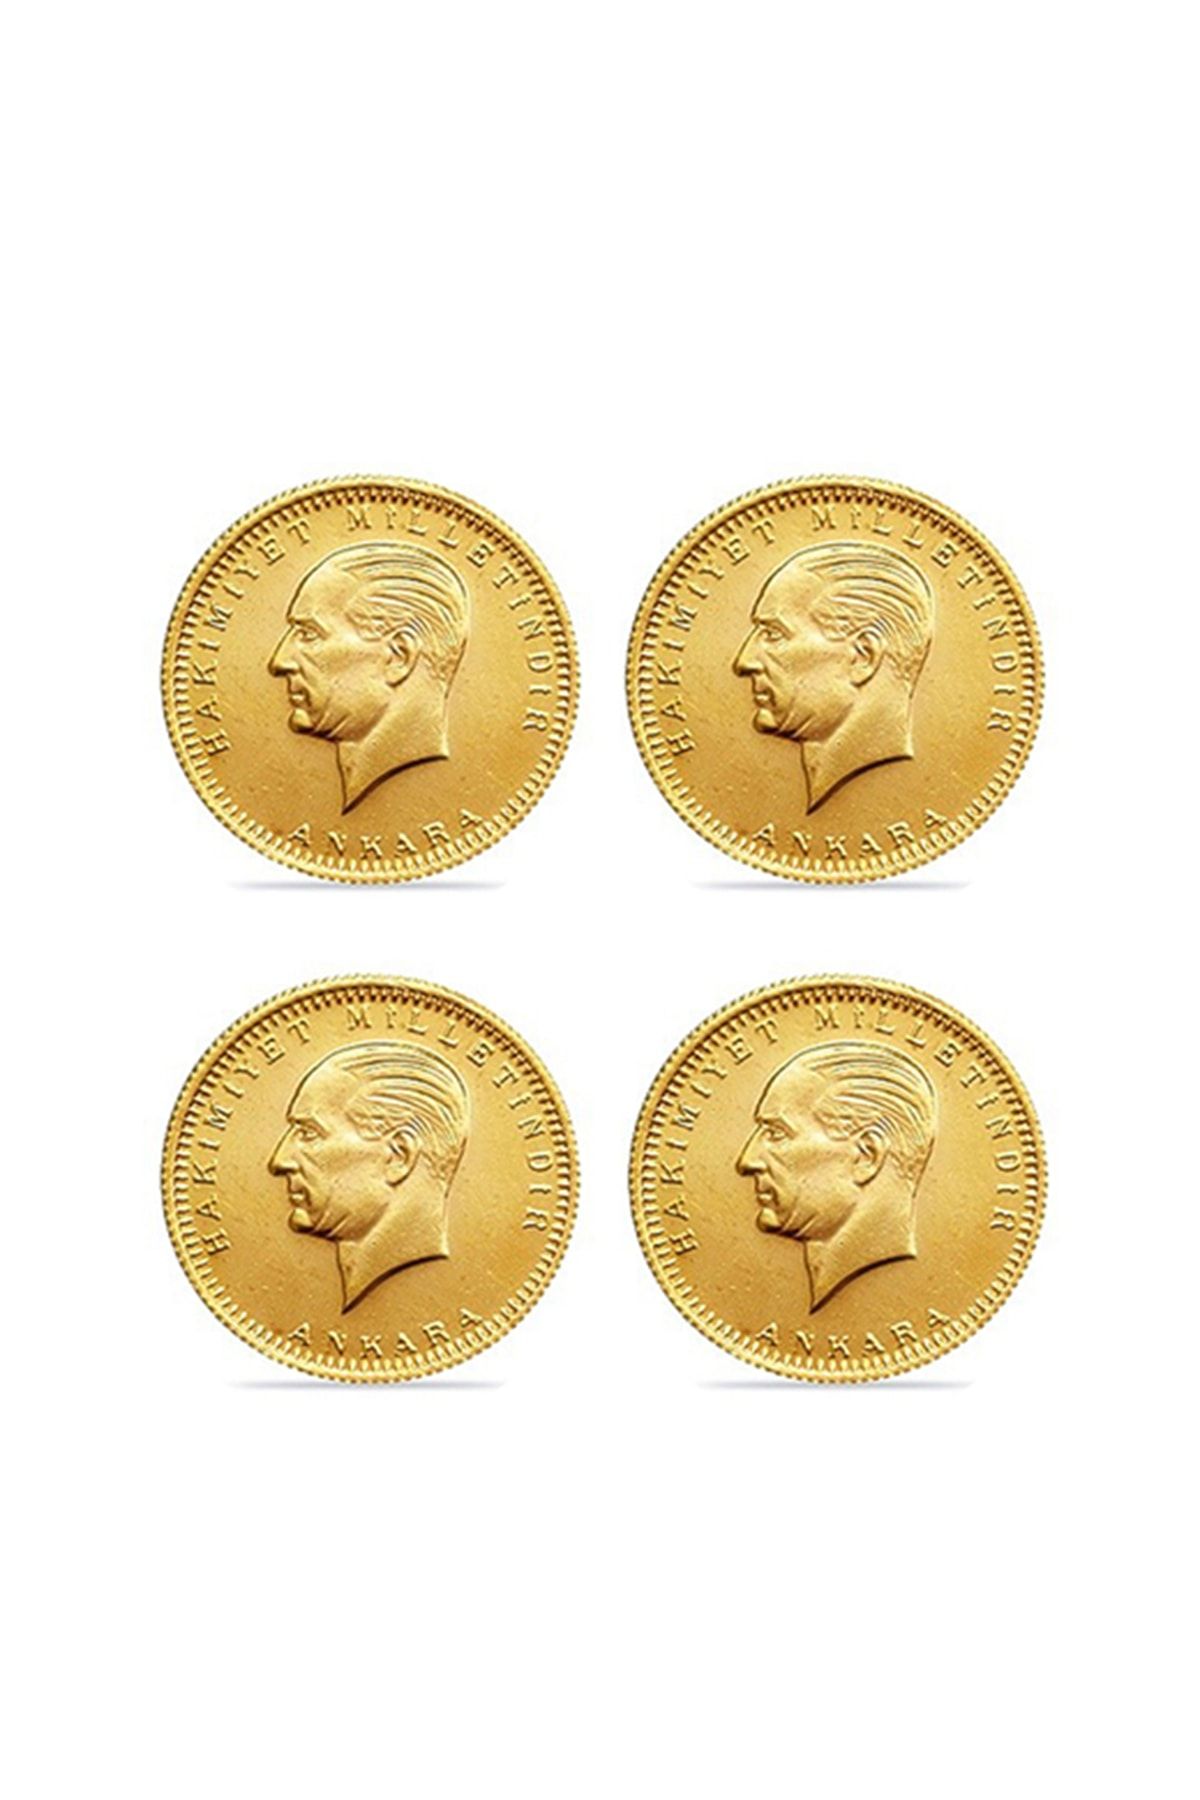 Safır Gold 4 Adet Eski Tarihli Cumhuriyet Altını SALE0004